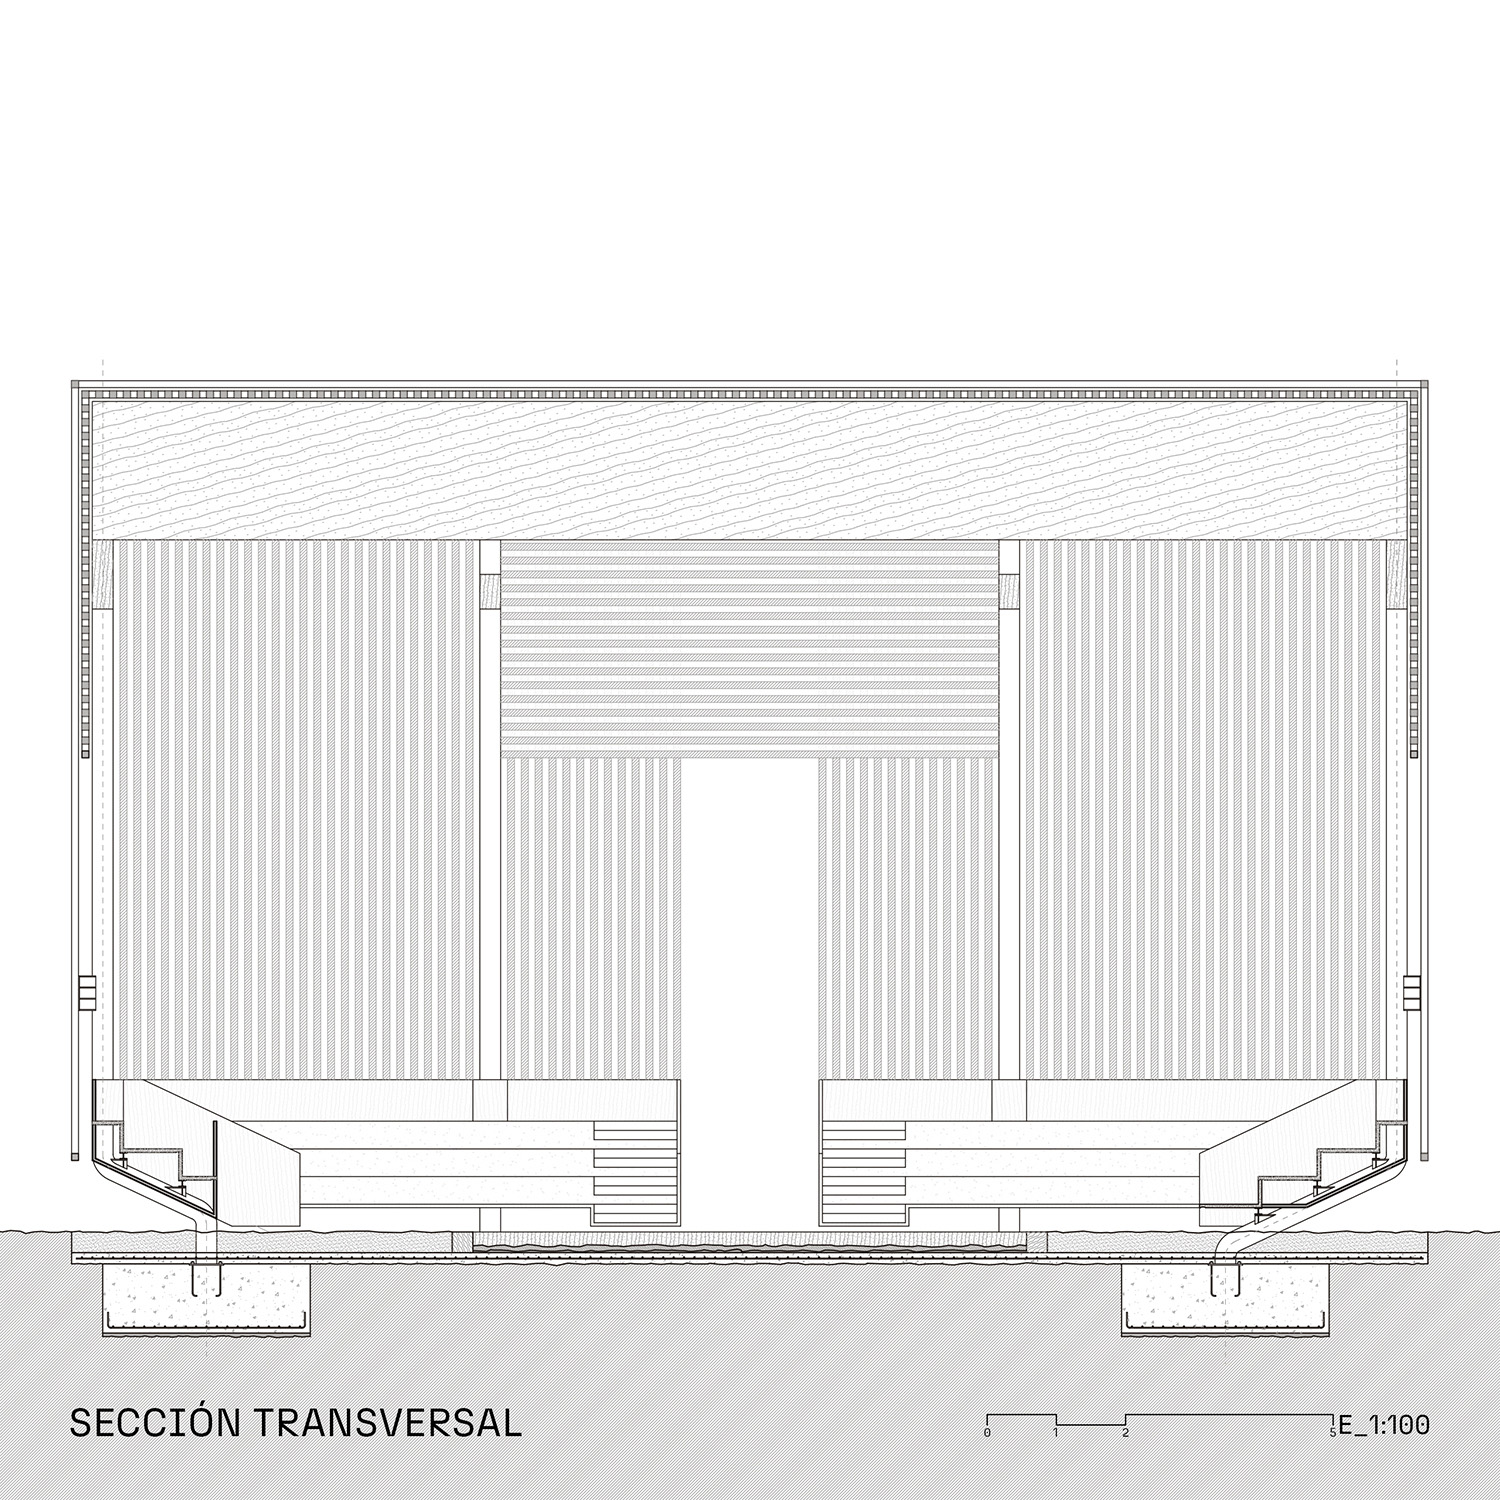 Project ATRIUM by Recon Architecture, architecture studio in Bilbao